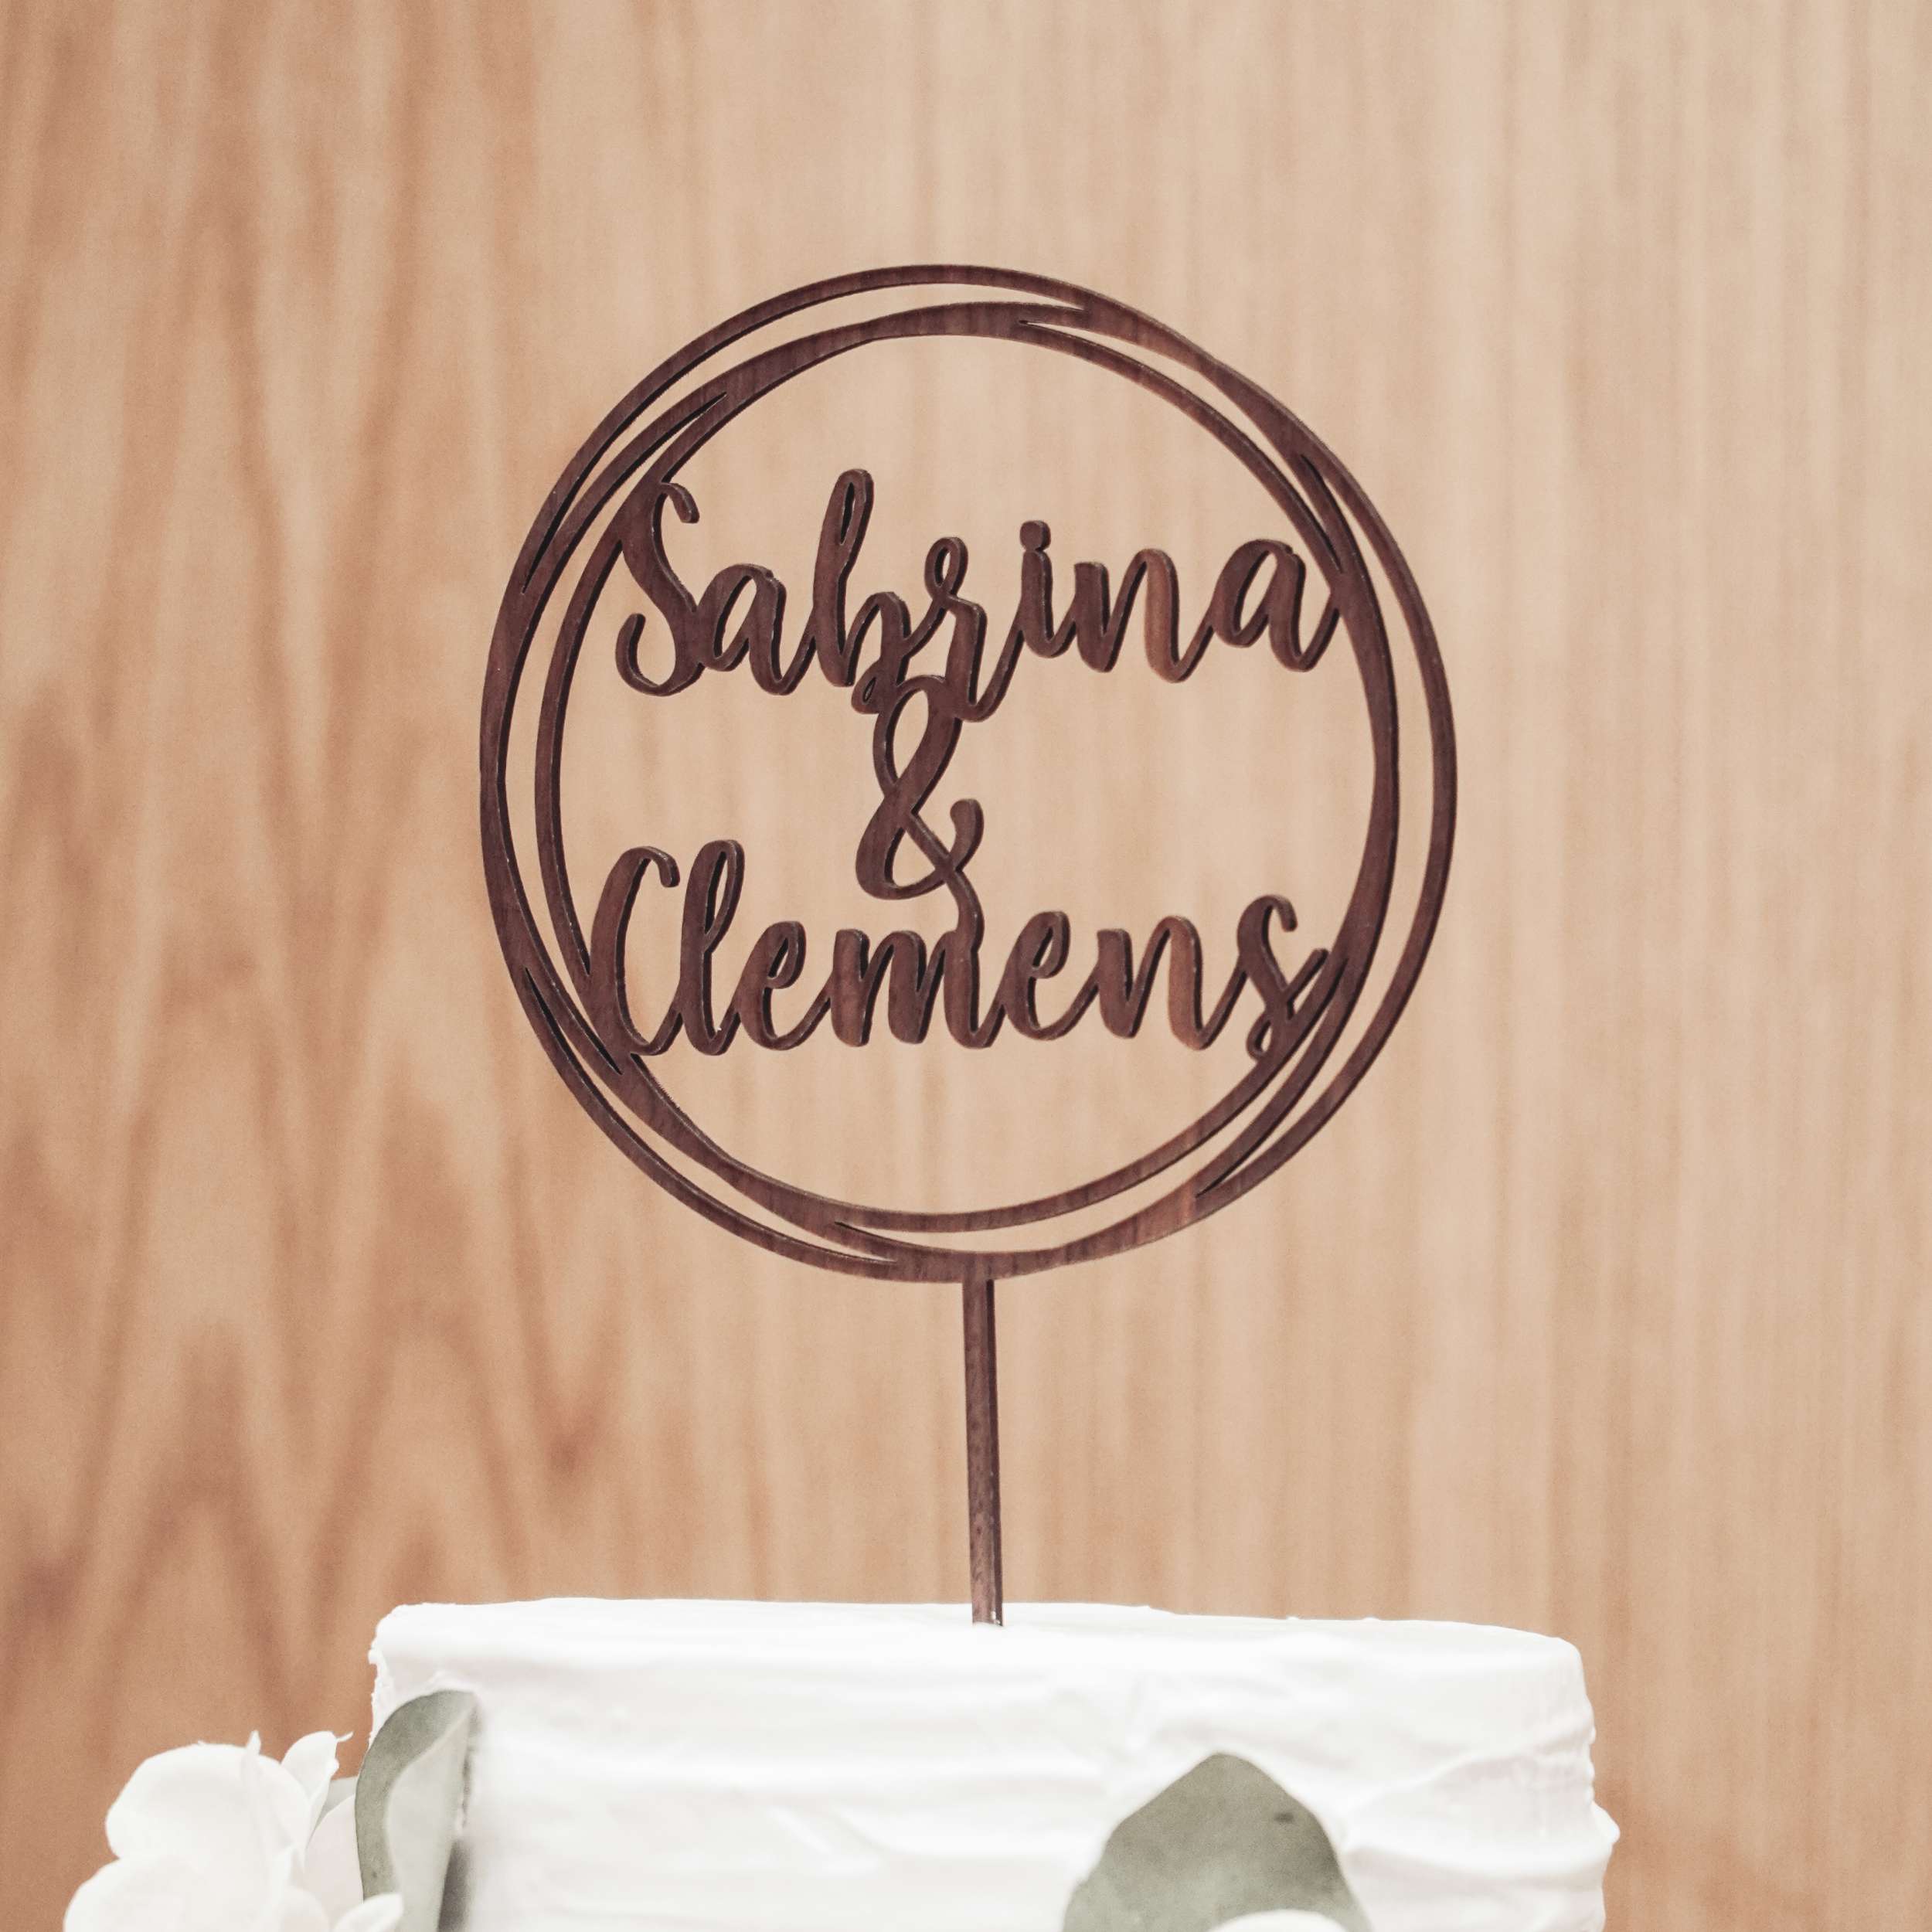 Entdecke unseren maßgeschneiderten Cake Topper für einen unvergleichlichen Wow-Effekt auf deiner Feier!